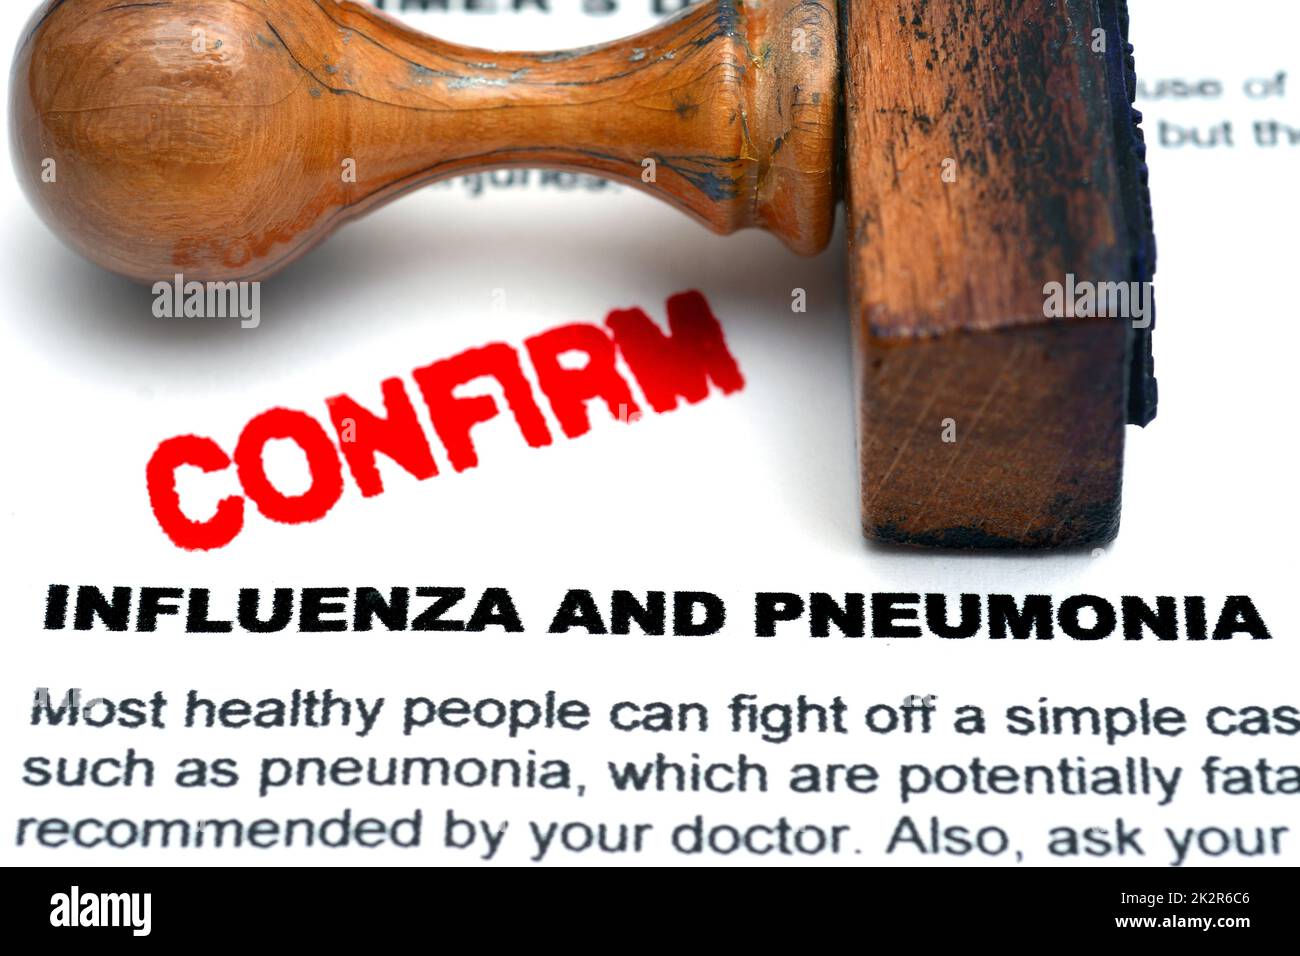 Influenza and pneumonia Stock Photo